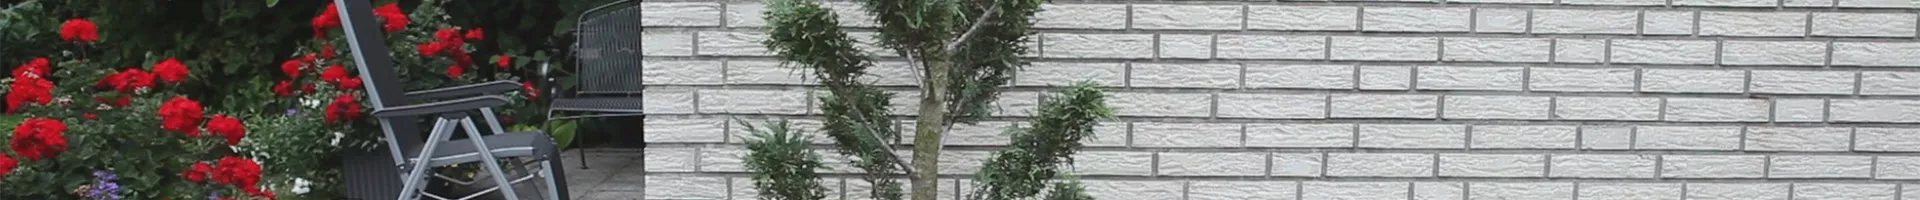 Zypresse - Einpflanzen im Garten (thumbnail).jpg